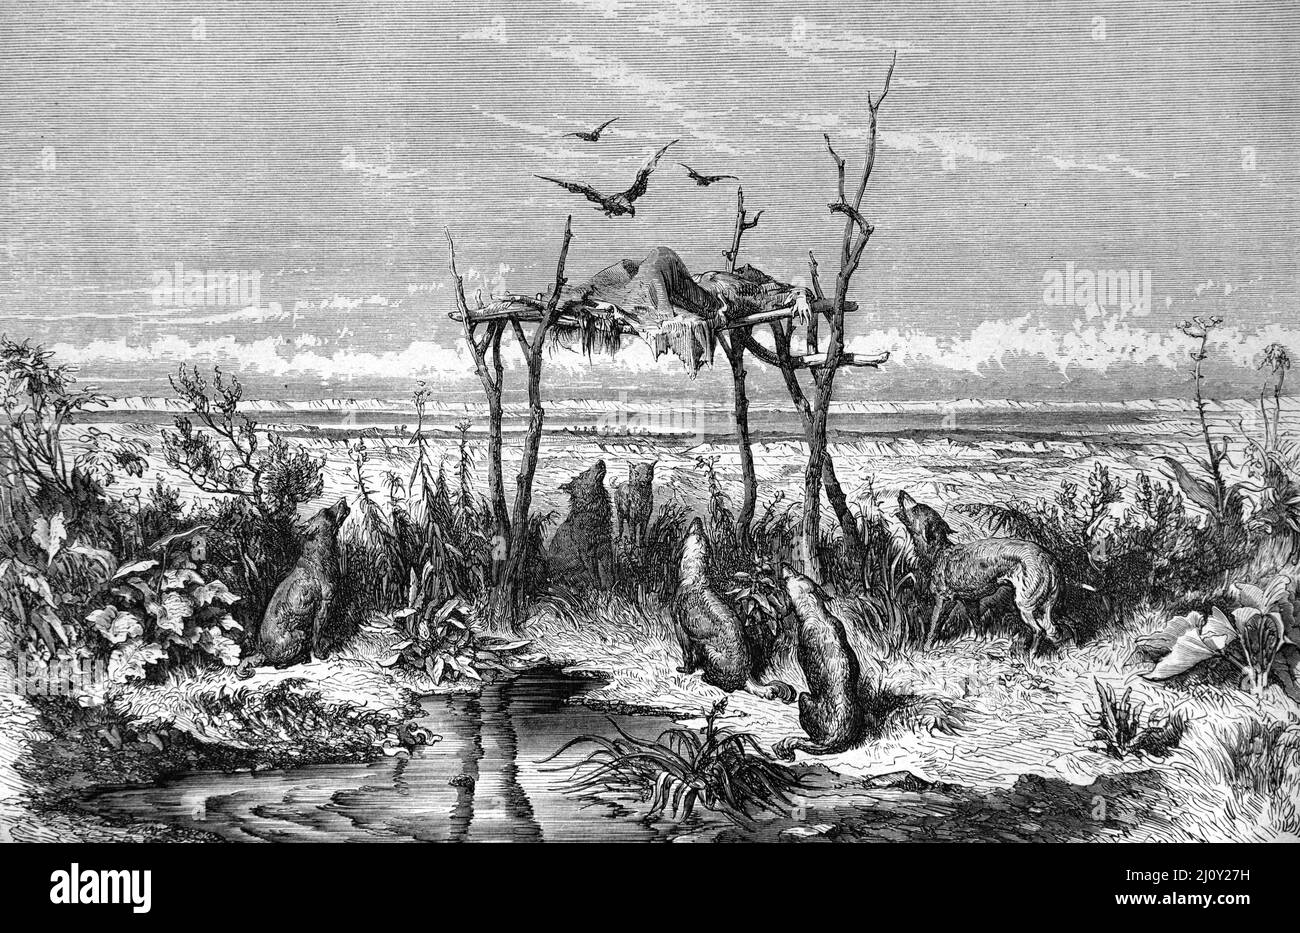 Sepoltura del cielo o Tombe australiane di indigeni aborigeni nel deserto o nell'Outback Australia. Illustrazione o incisione vintage 1860. Foto Stock